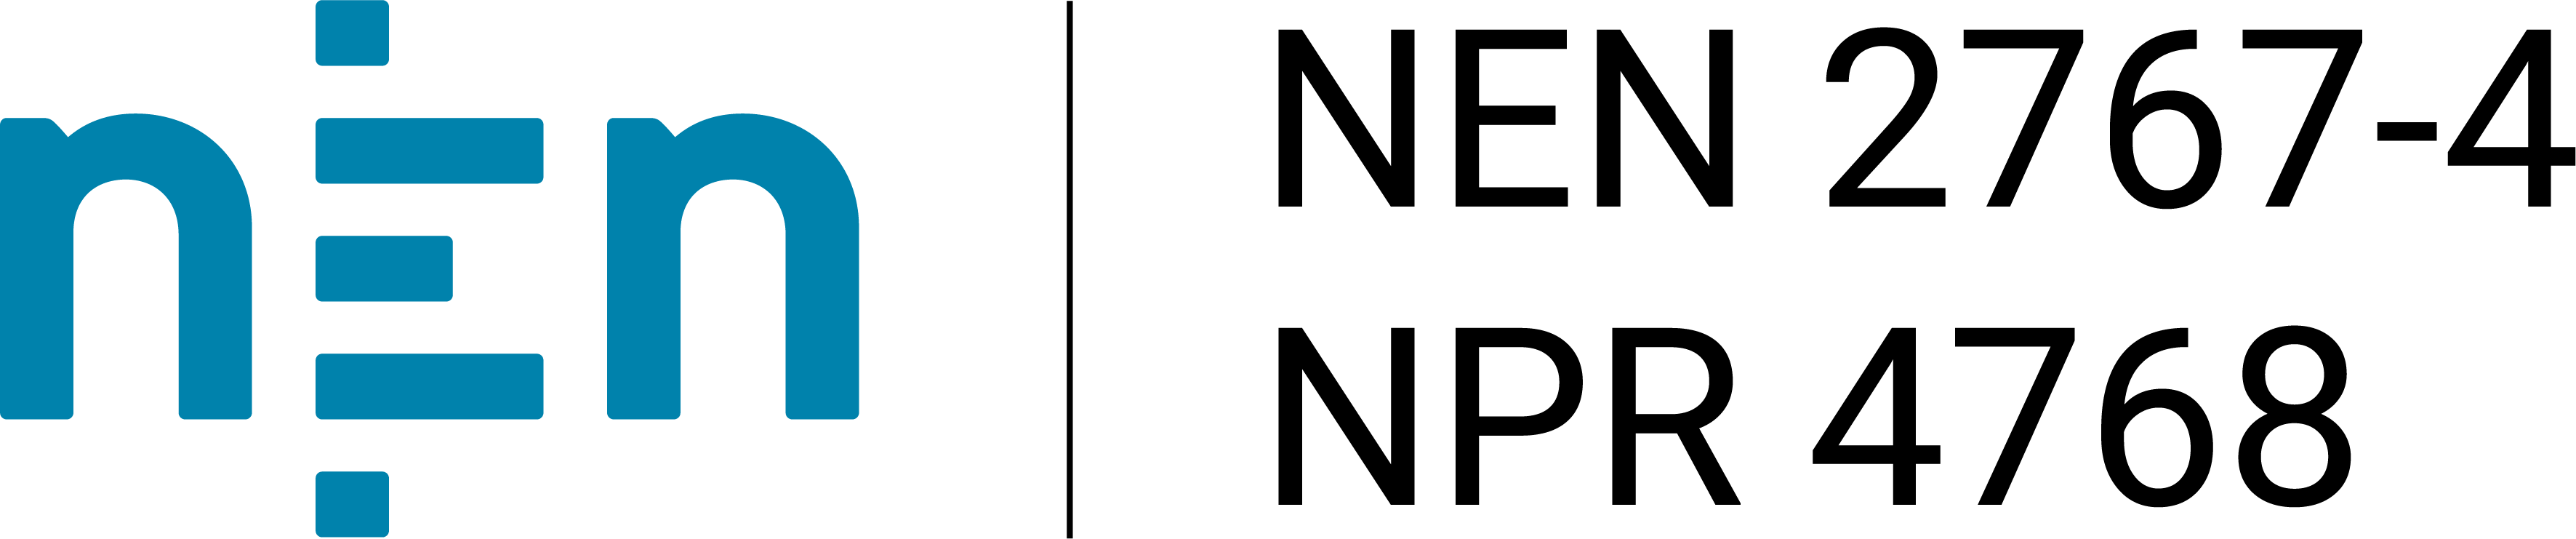 NEN 2767-4 logo